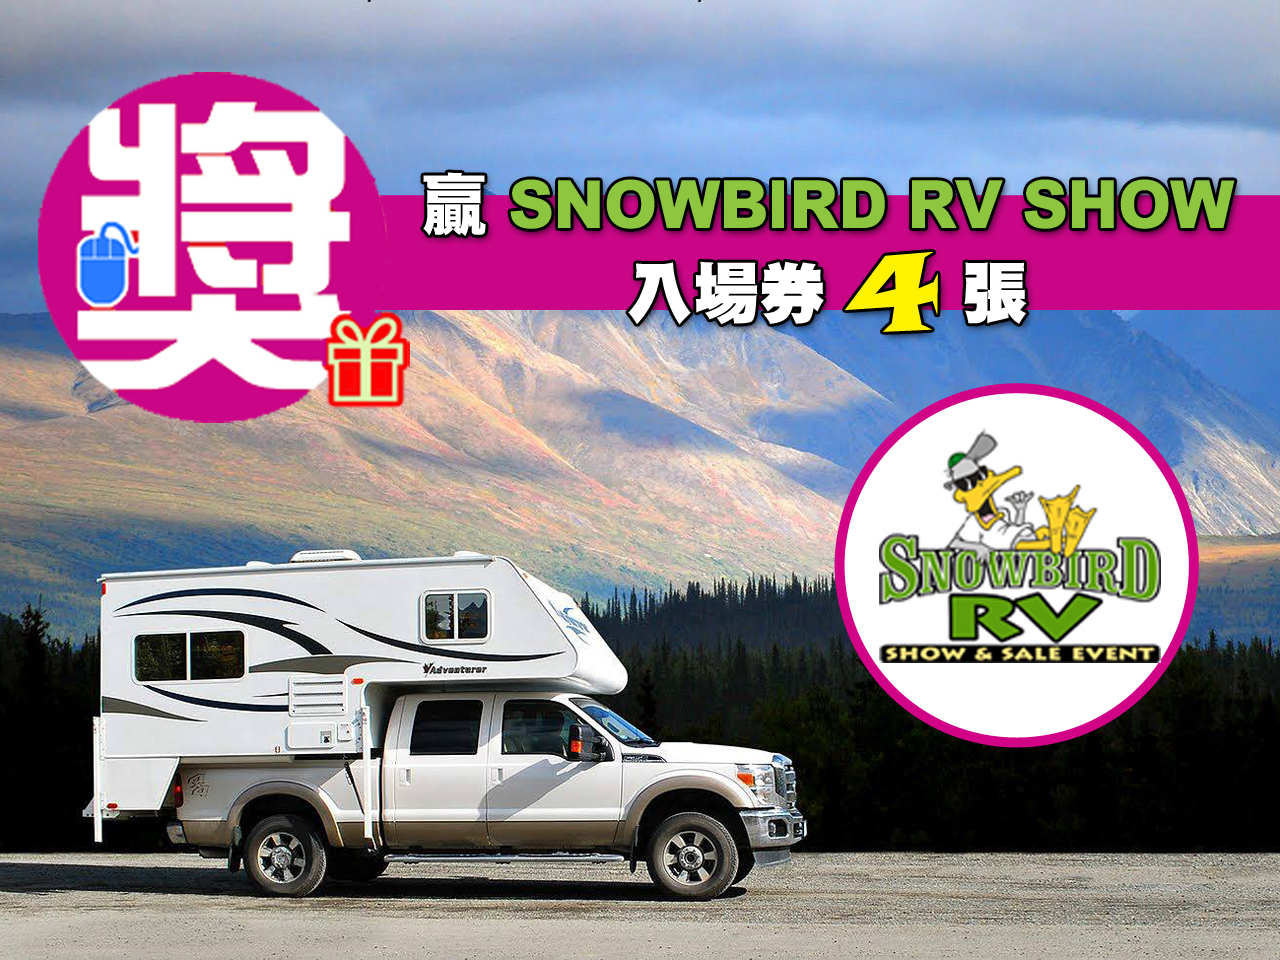 贏 4 張 2018 Snowbird RV Show & Sale Event 入場門票 [已完結